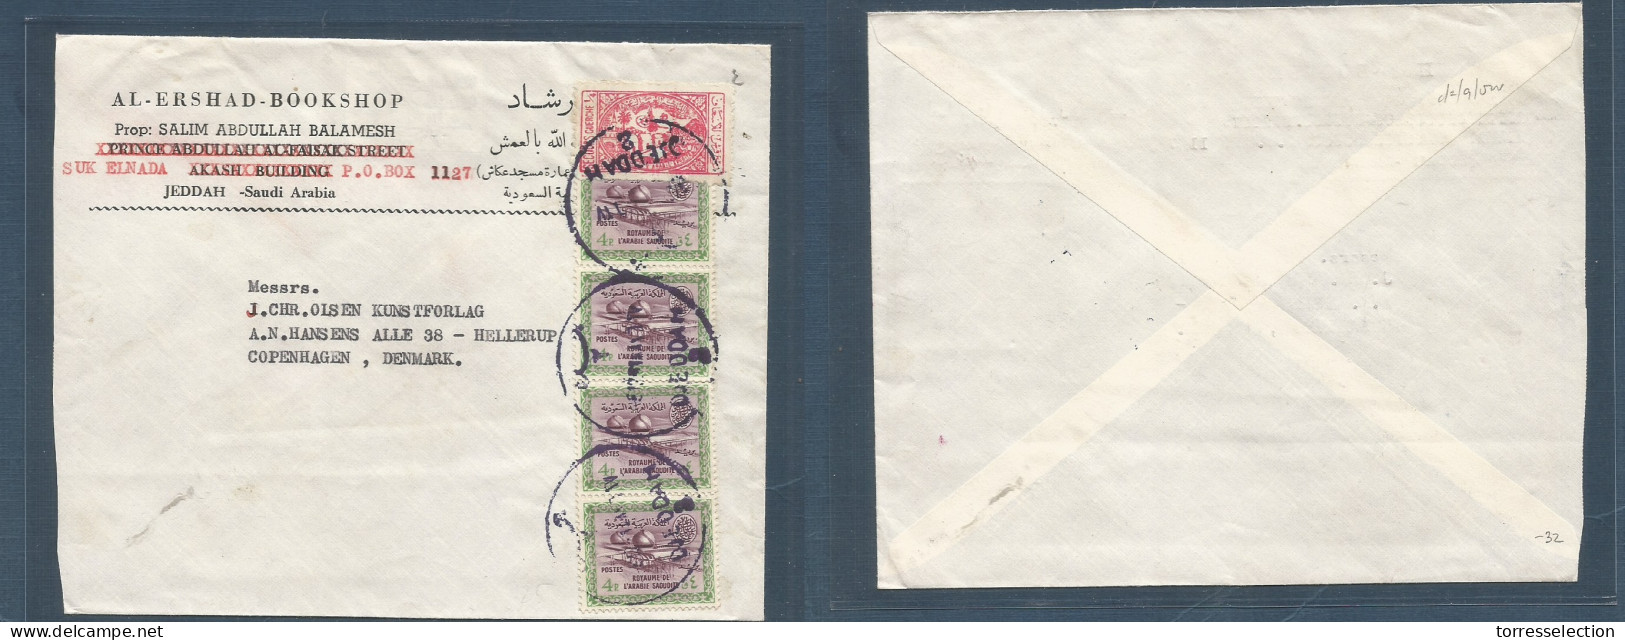 SAUDI ARABIA. 1951. Jeddah - Denmark, Cph. Comercial Multifkd Env Including Benefic Label, Tied Cds. Fine. XSALE. - Arabia Saudita